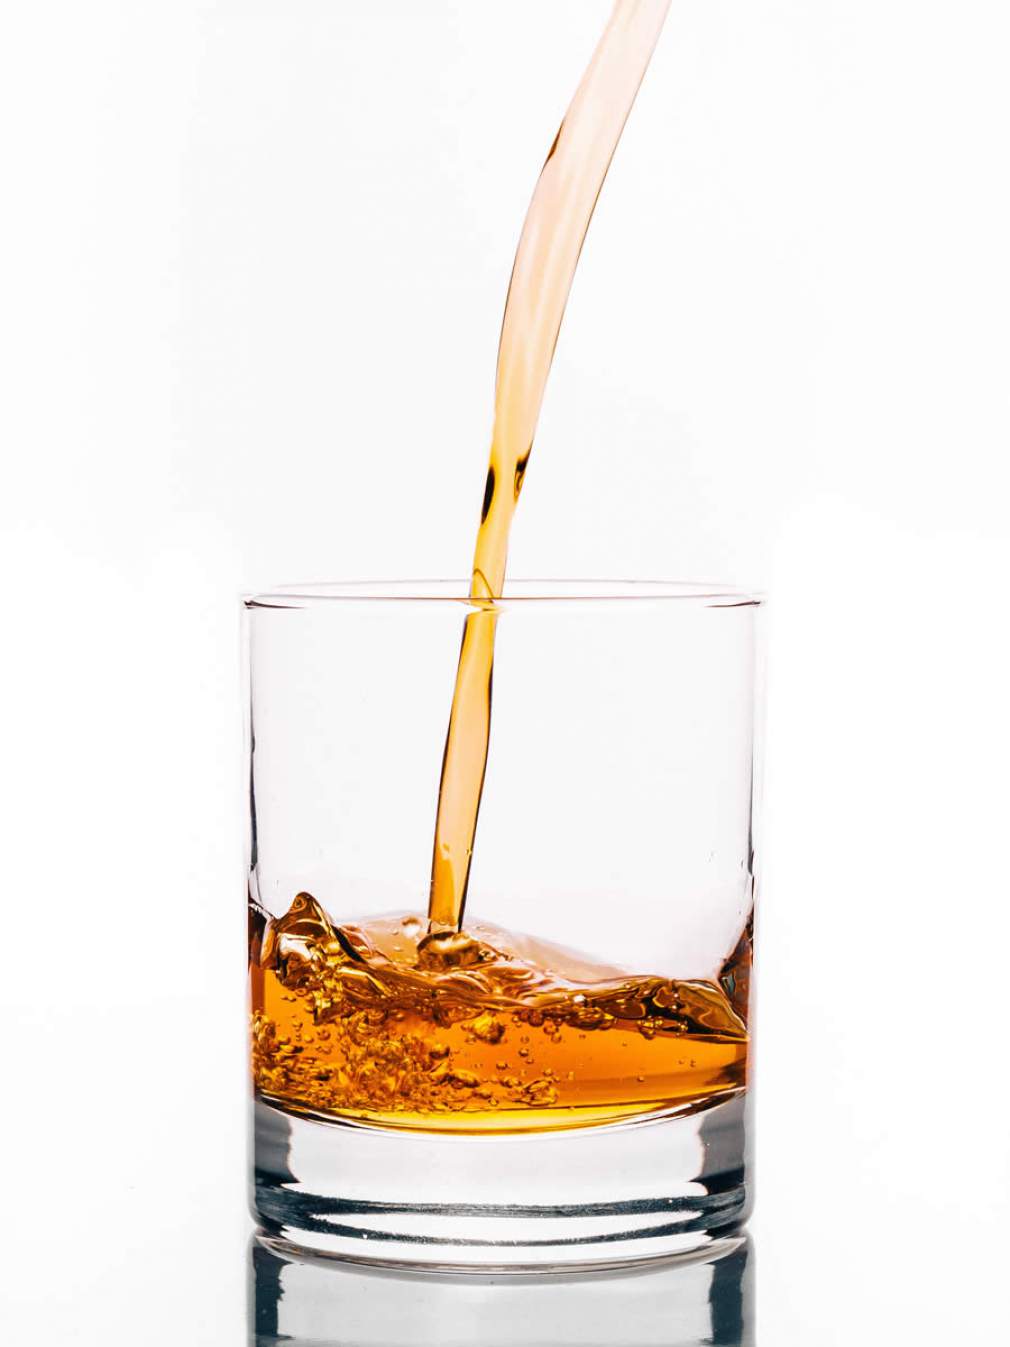 Consumo de álcool durante a quarentena deve ser reduzido para evitar riscos à saúde